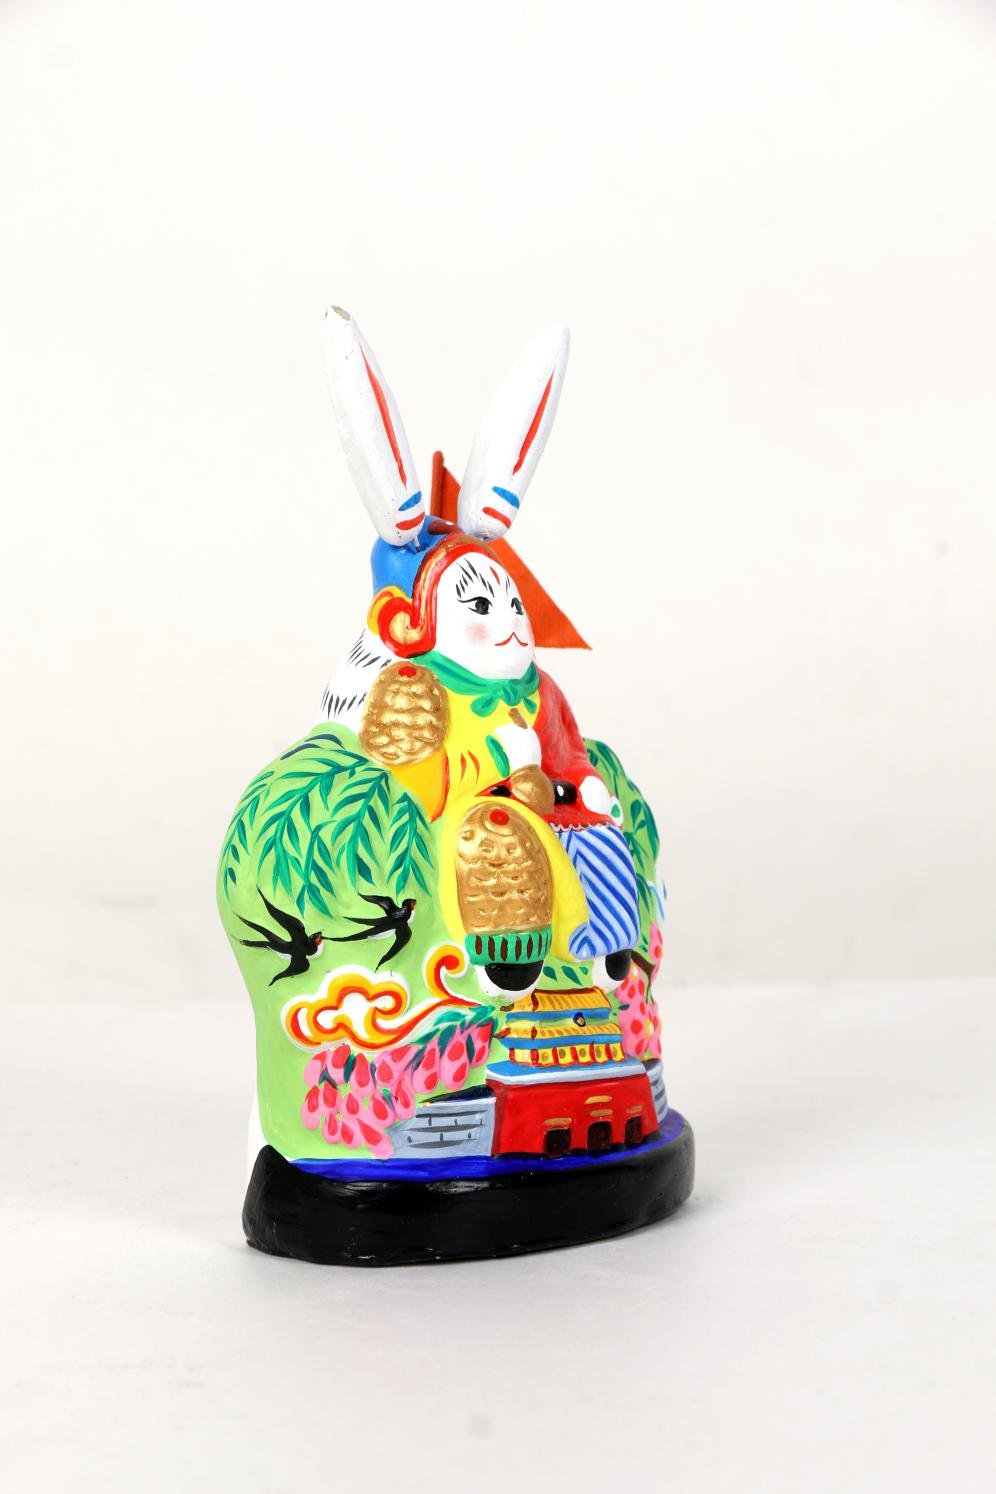 Beijing Lord Rabbit Figurines